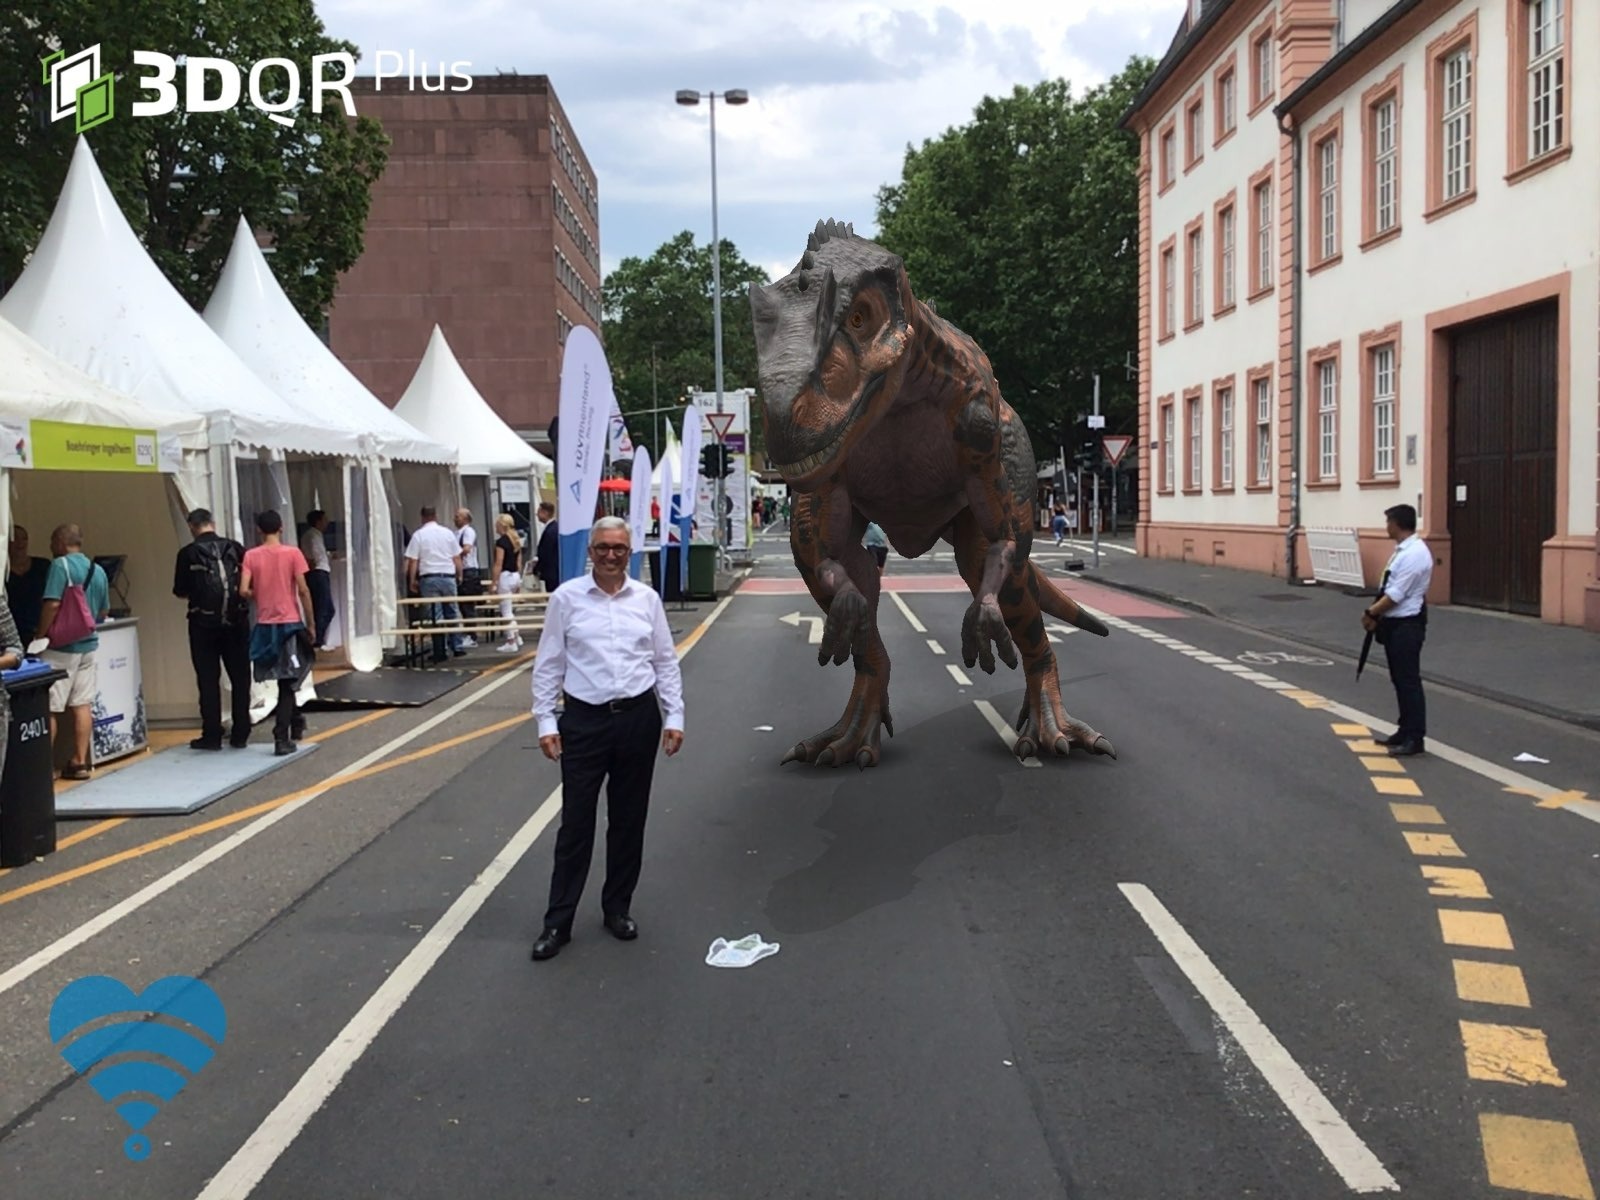 Ein Mann steht auf einer Straße neben Festzelten, hinter ihm steht ein animierter Dinosaurier